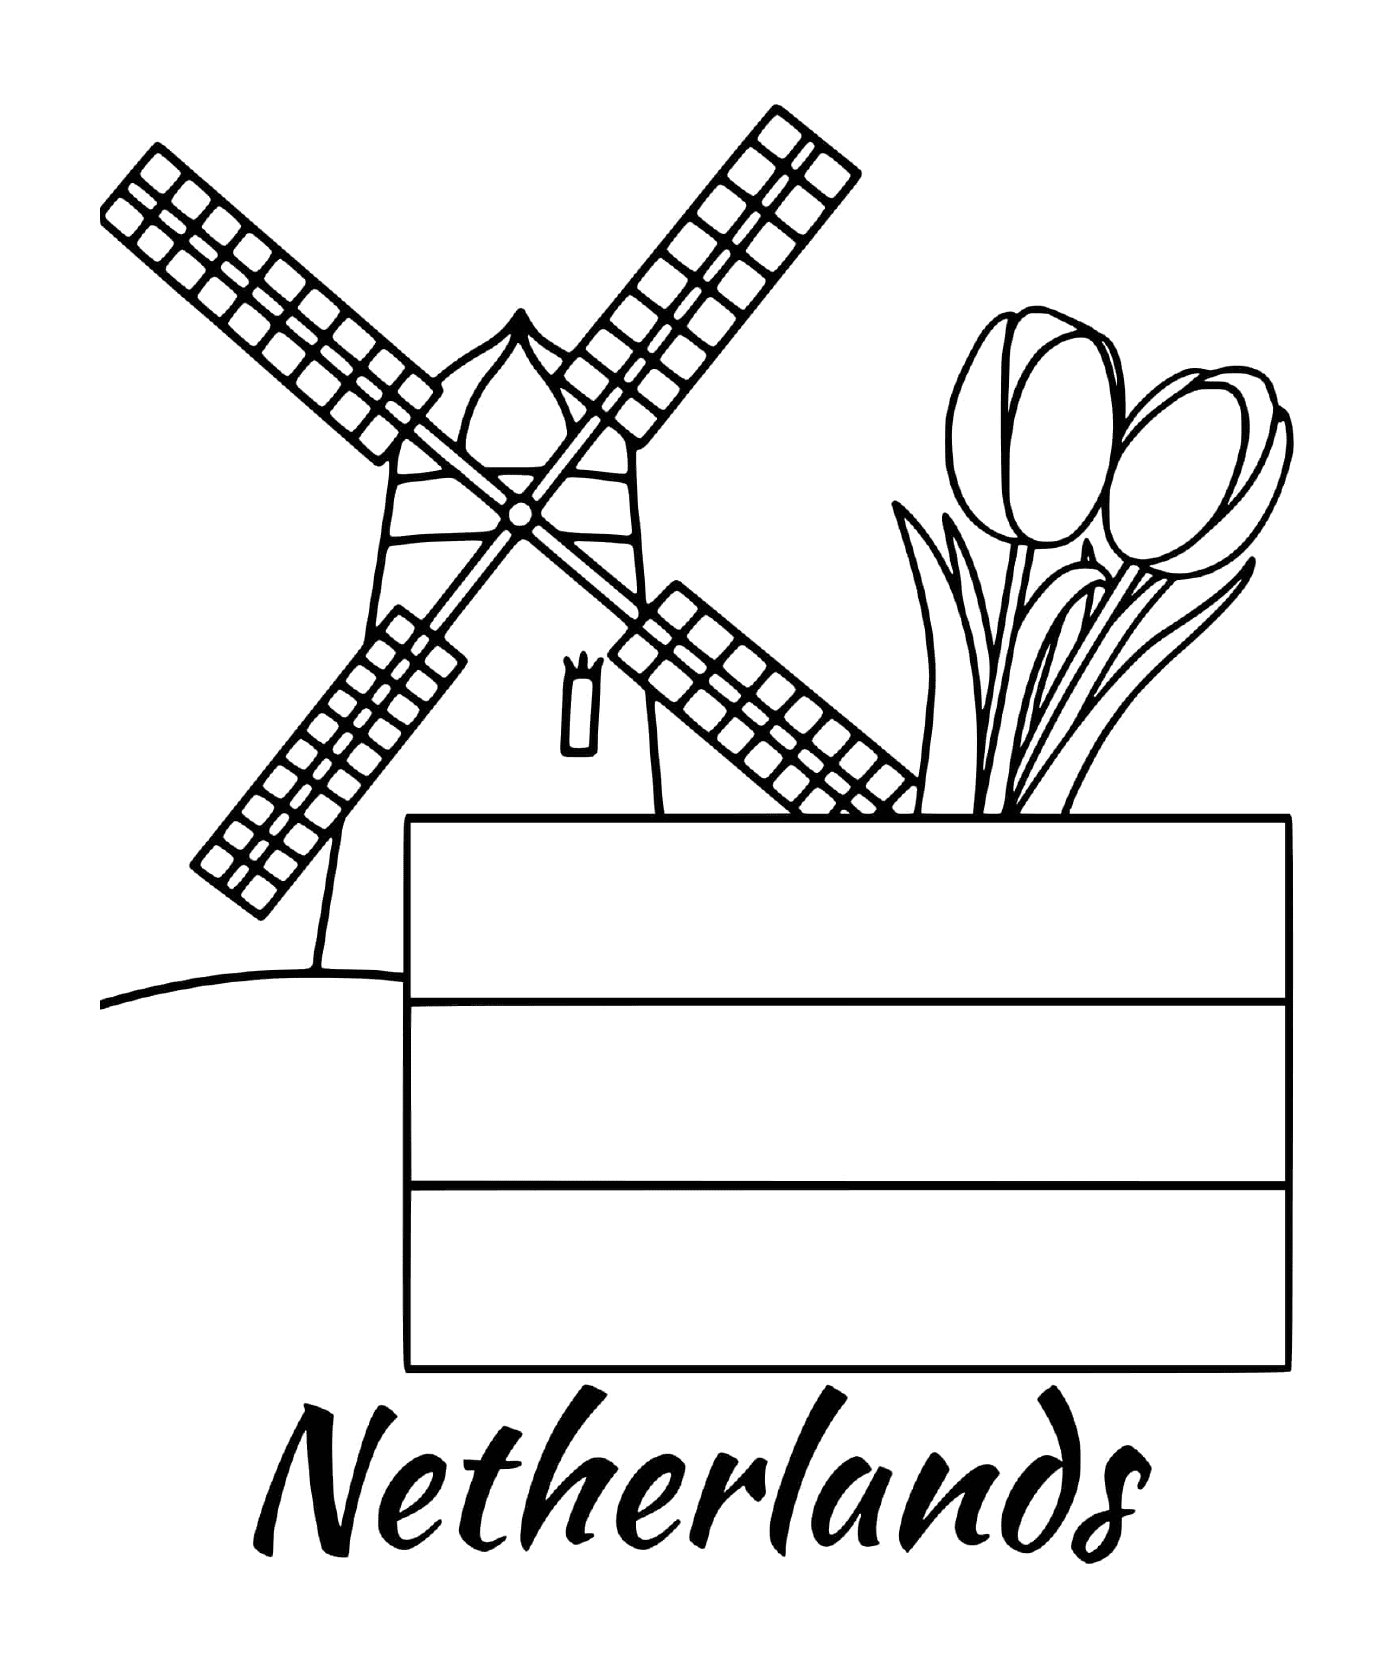  Dutch flag with windmill 